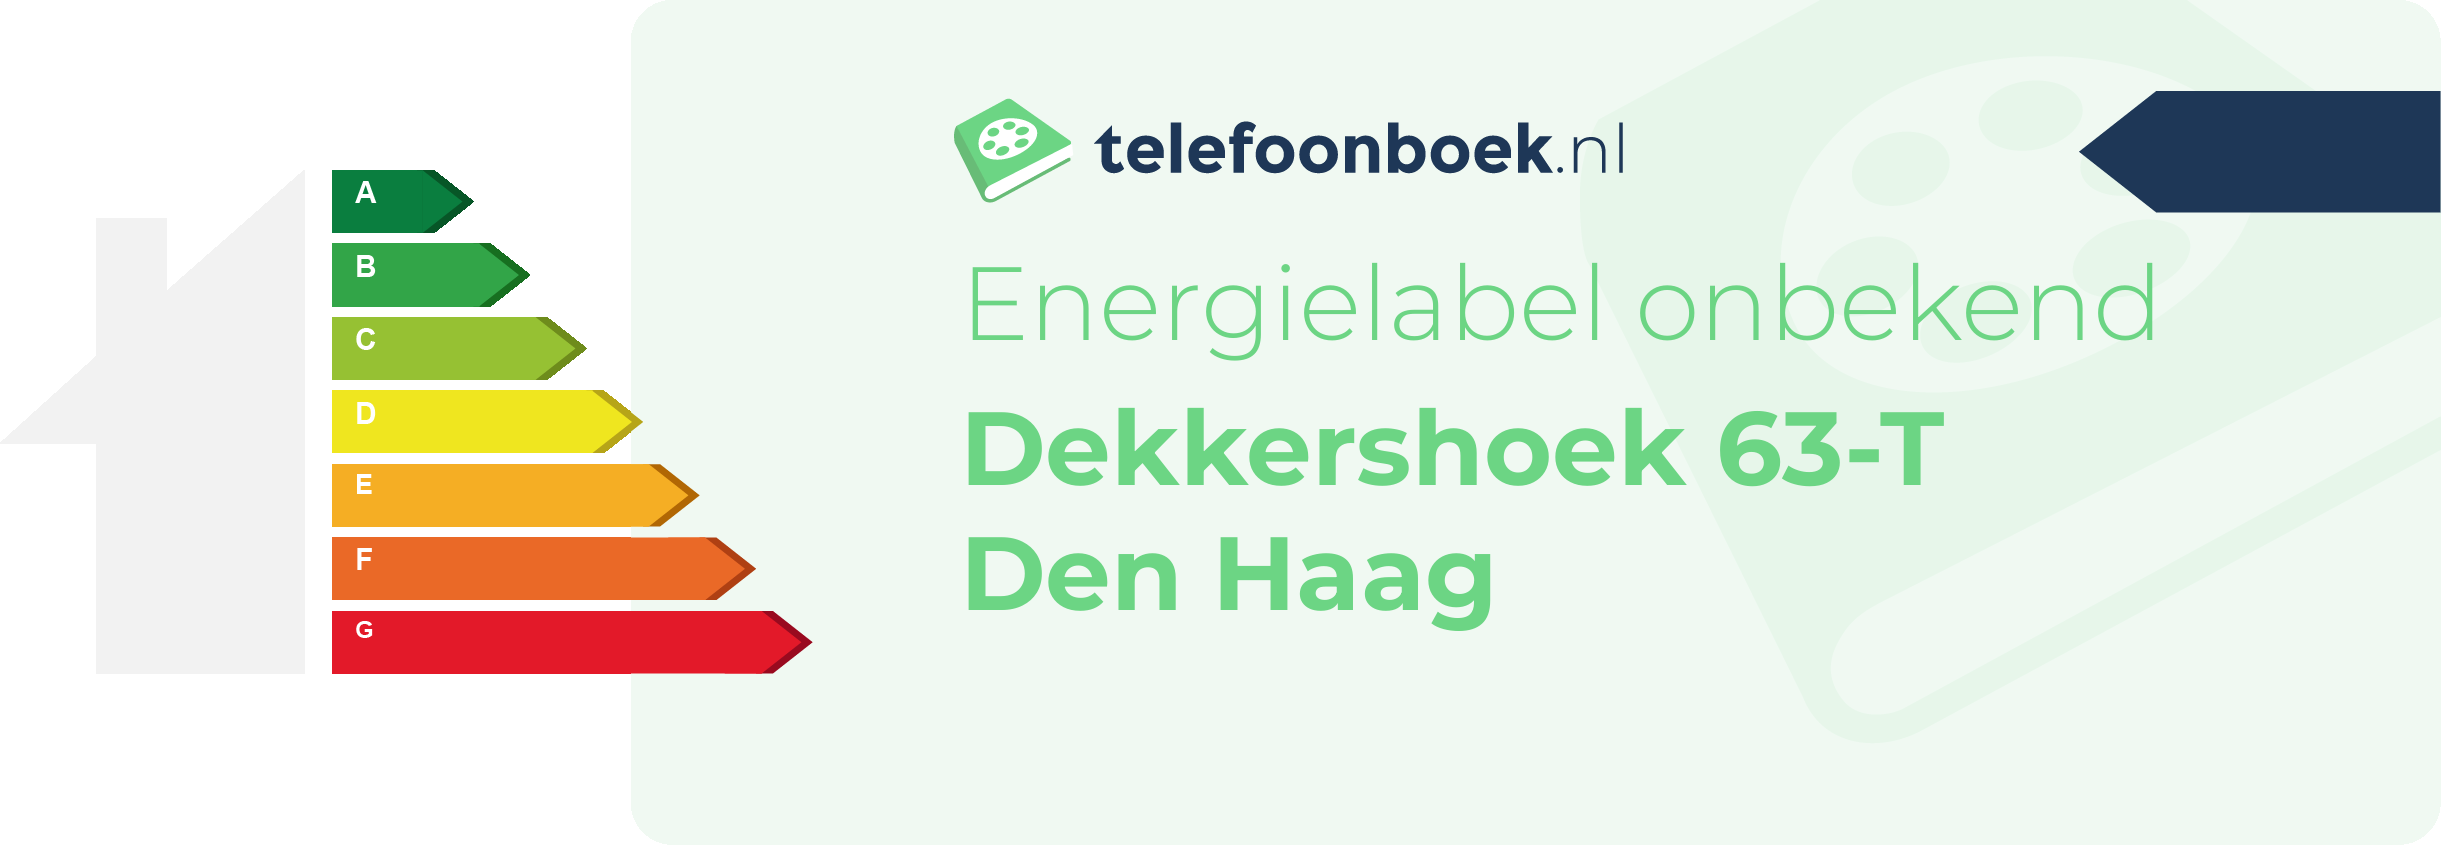 Energielabel Dekkershoek 63-T Den Haag